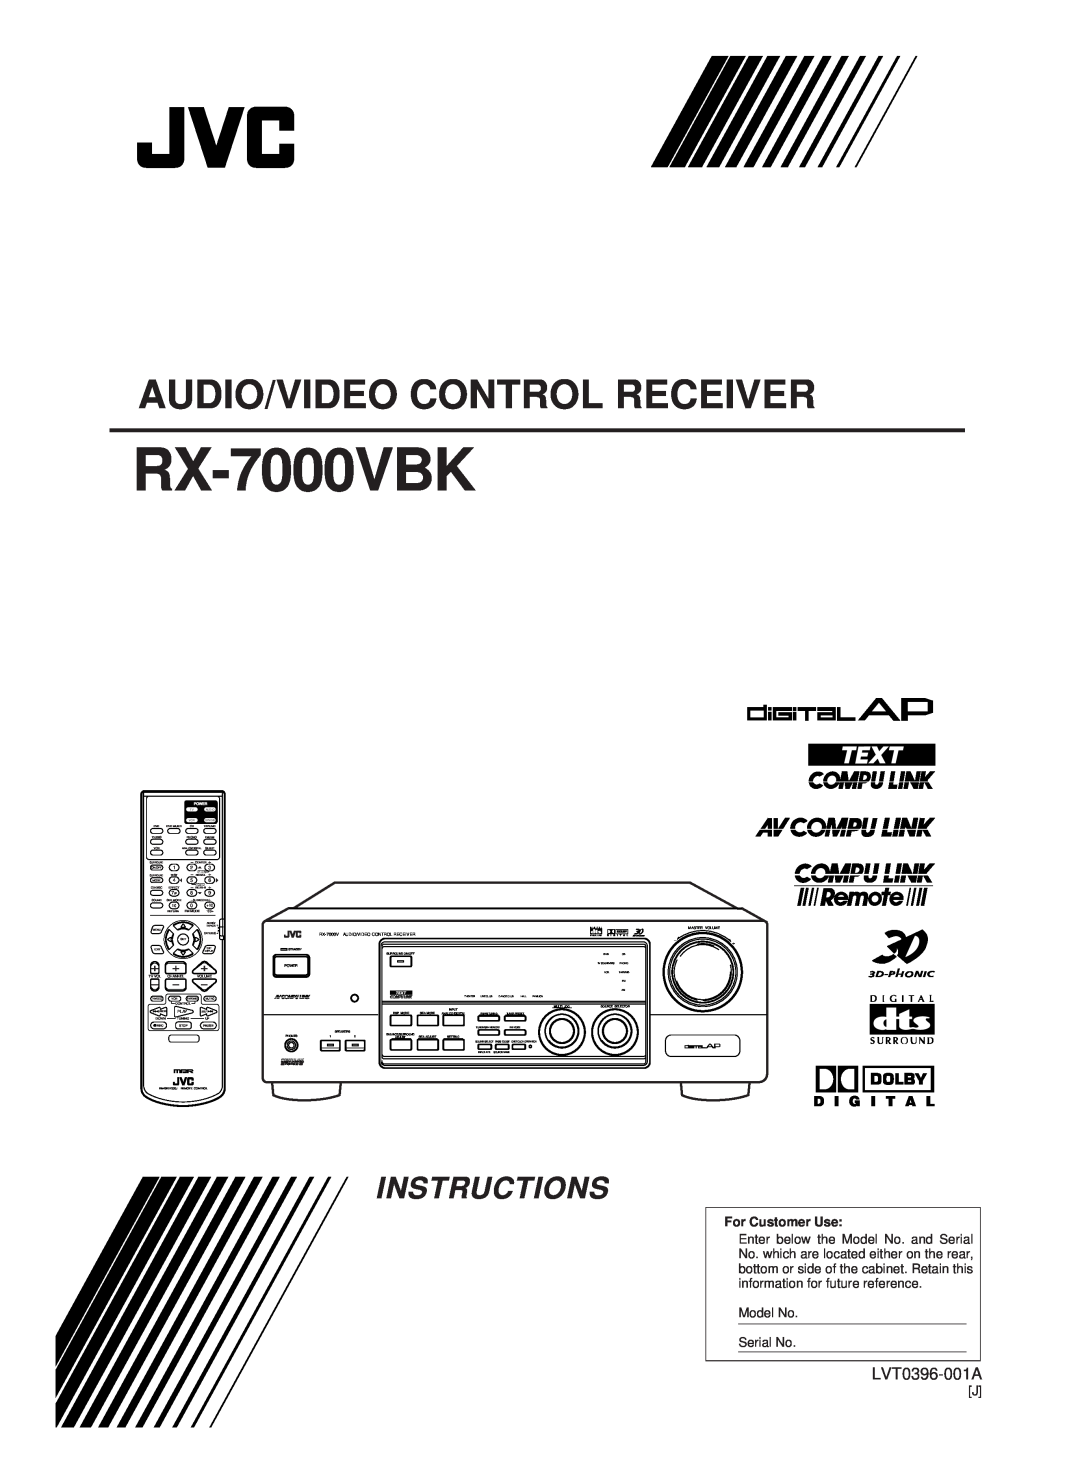 JVC RX-7000VBK manual Audio/Video Control Receiver, Instructions, LVT0396-001A, D I G I T A L, For Customer Use 